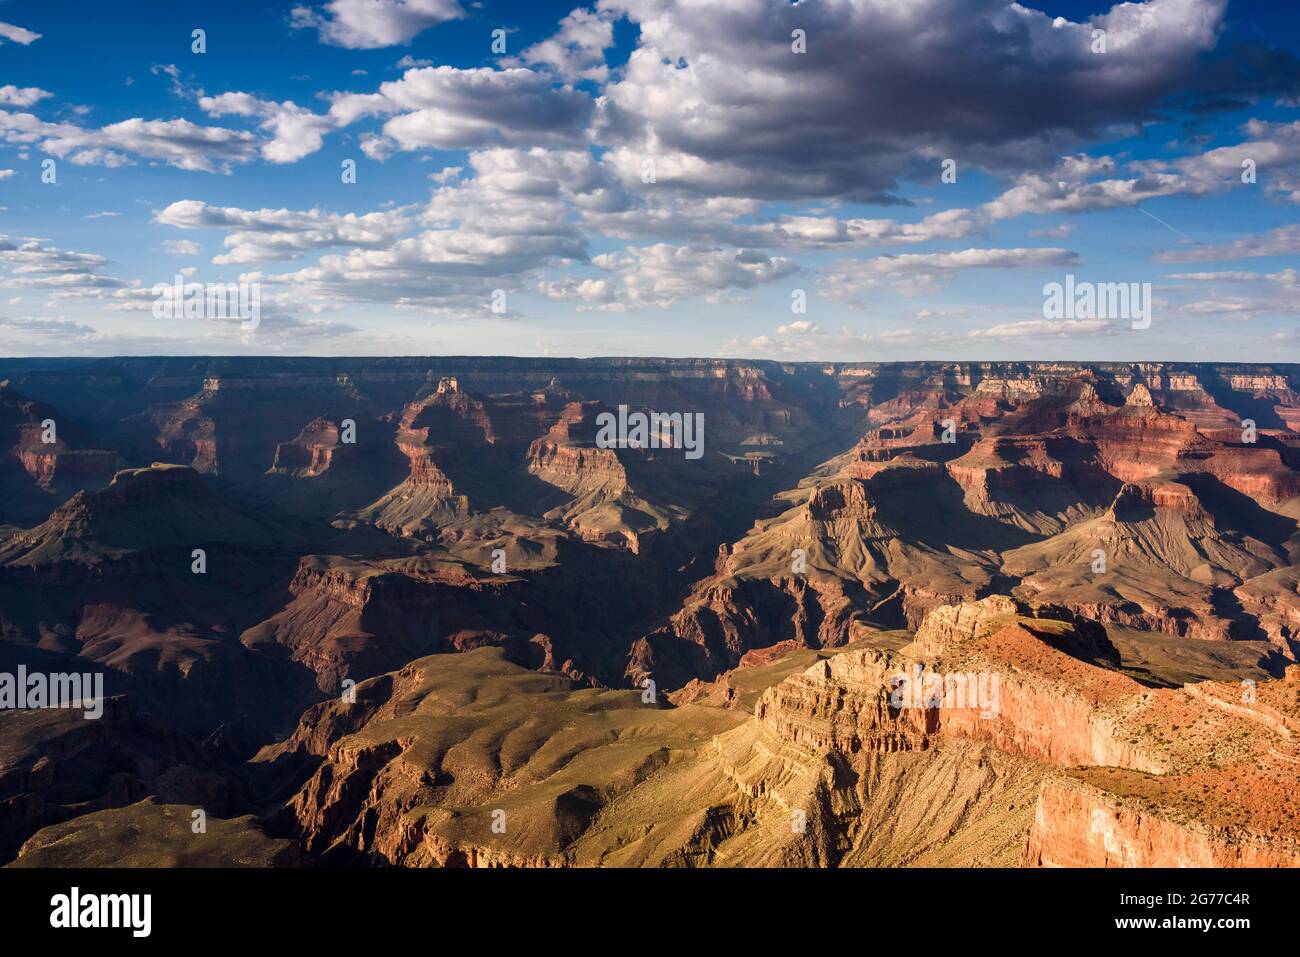 Maravilla geológica del gran cañón Foto de stock